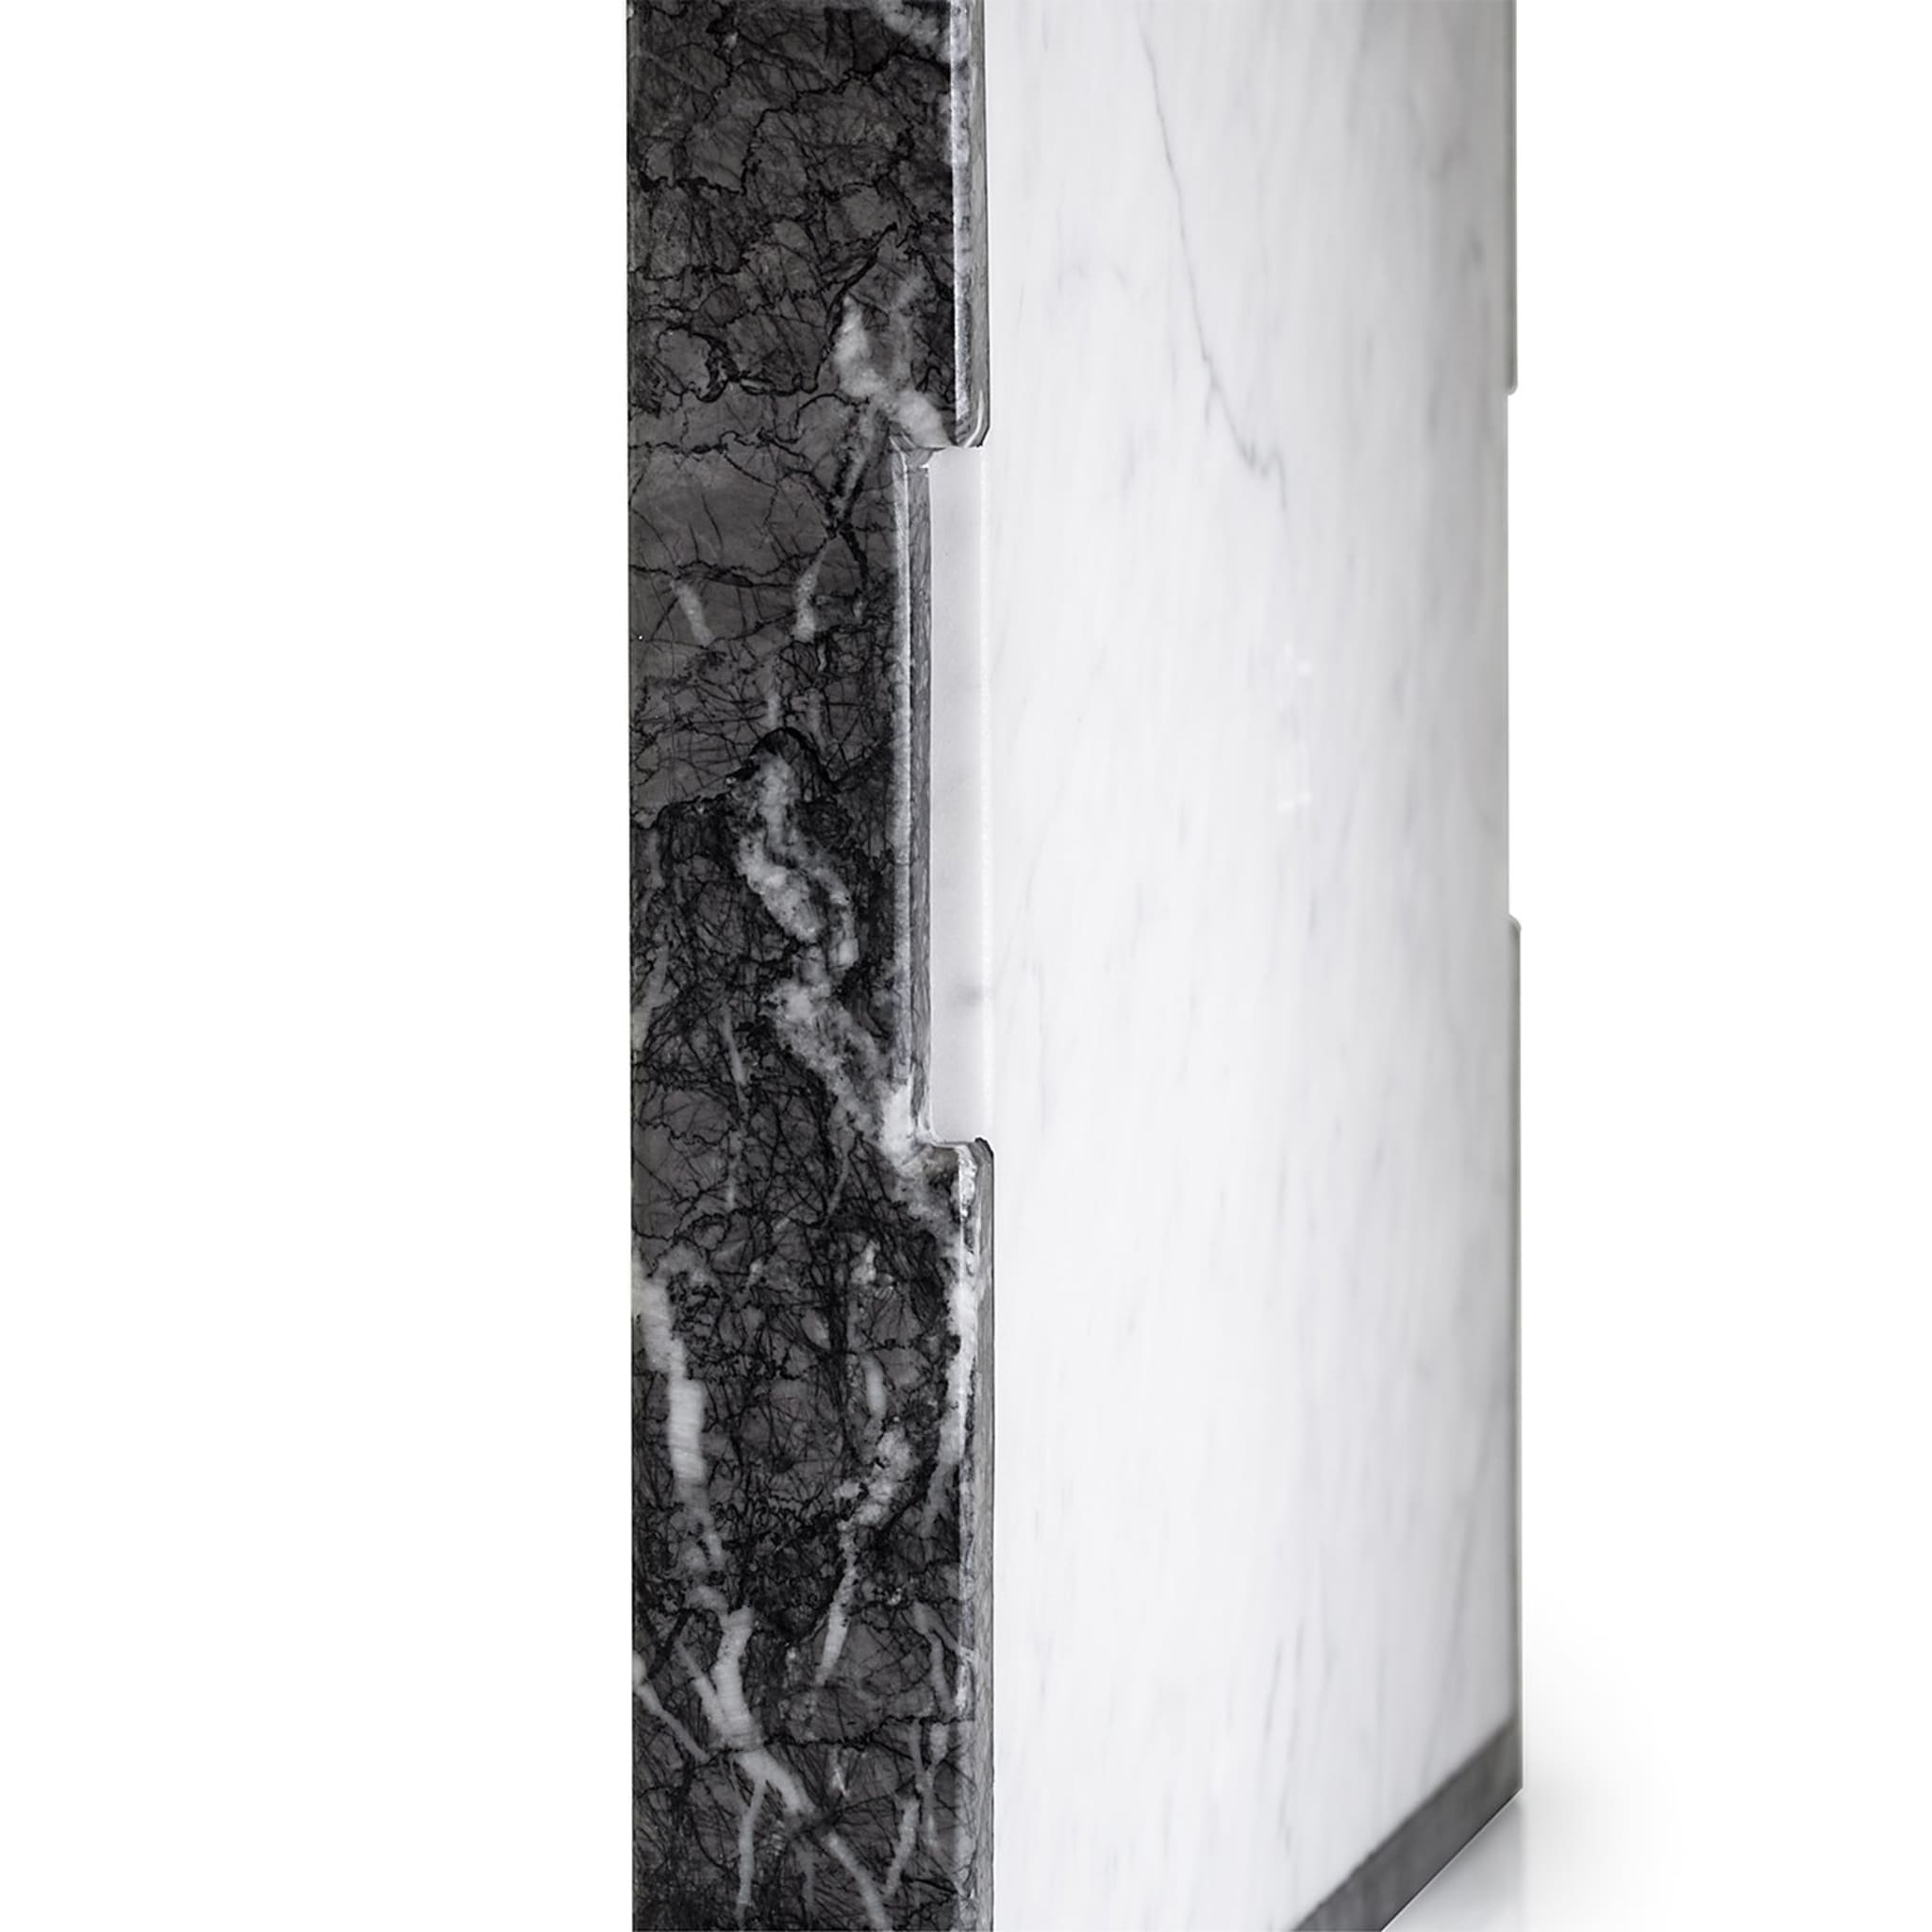 Convivio Maxi Solid Tray in Grey Carnico and White Carrara Marbles - Alternative view 2